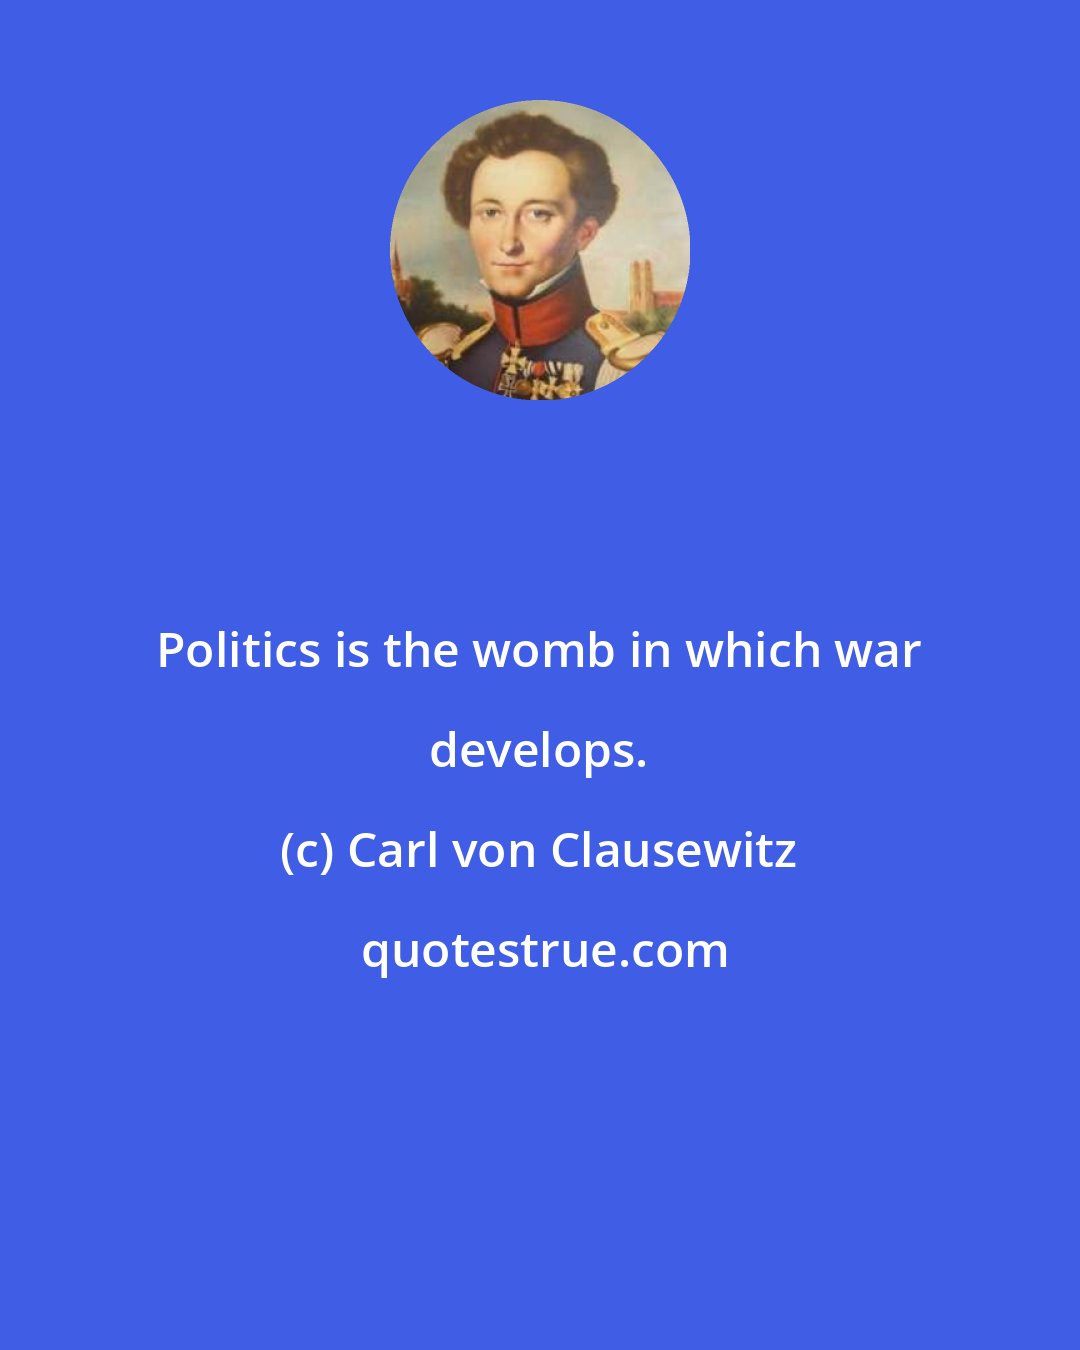 Carl von Clausewitz: Politics is the womb in which war develops.